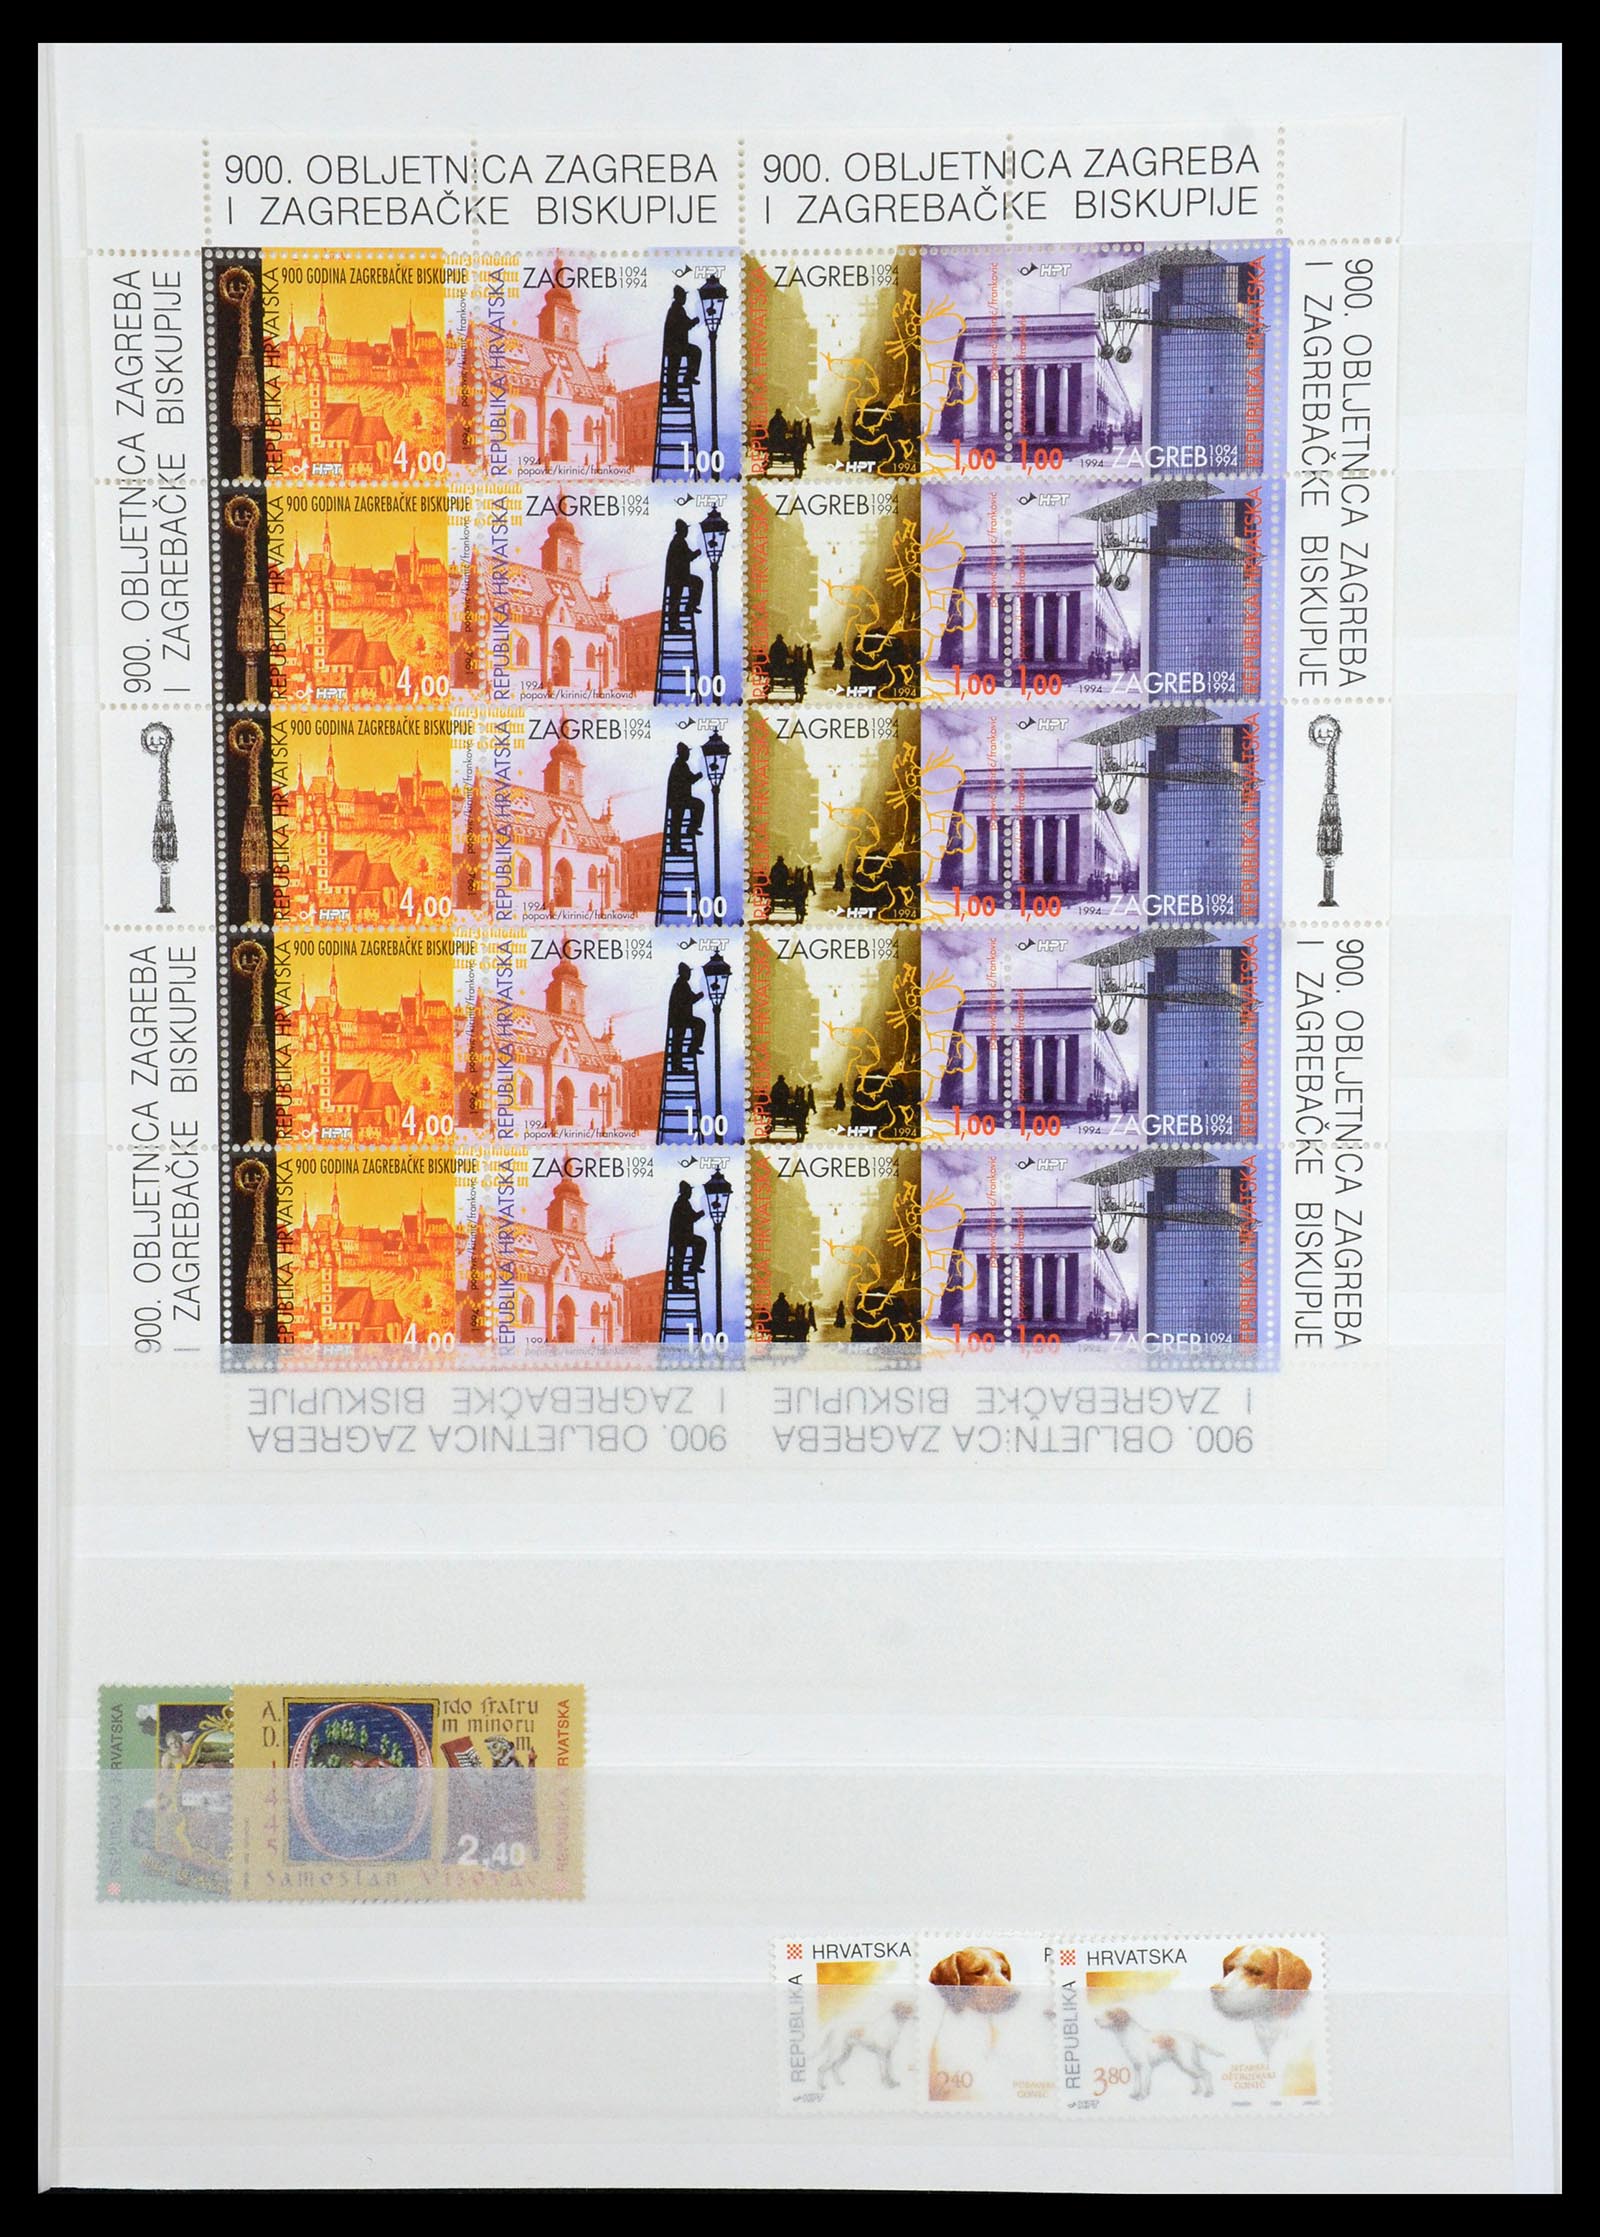 36461 043 - Stamp collection 36461 Slovenia, Croatia and Bosnia-Herzegovina MNH 1991